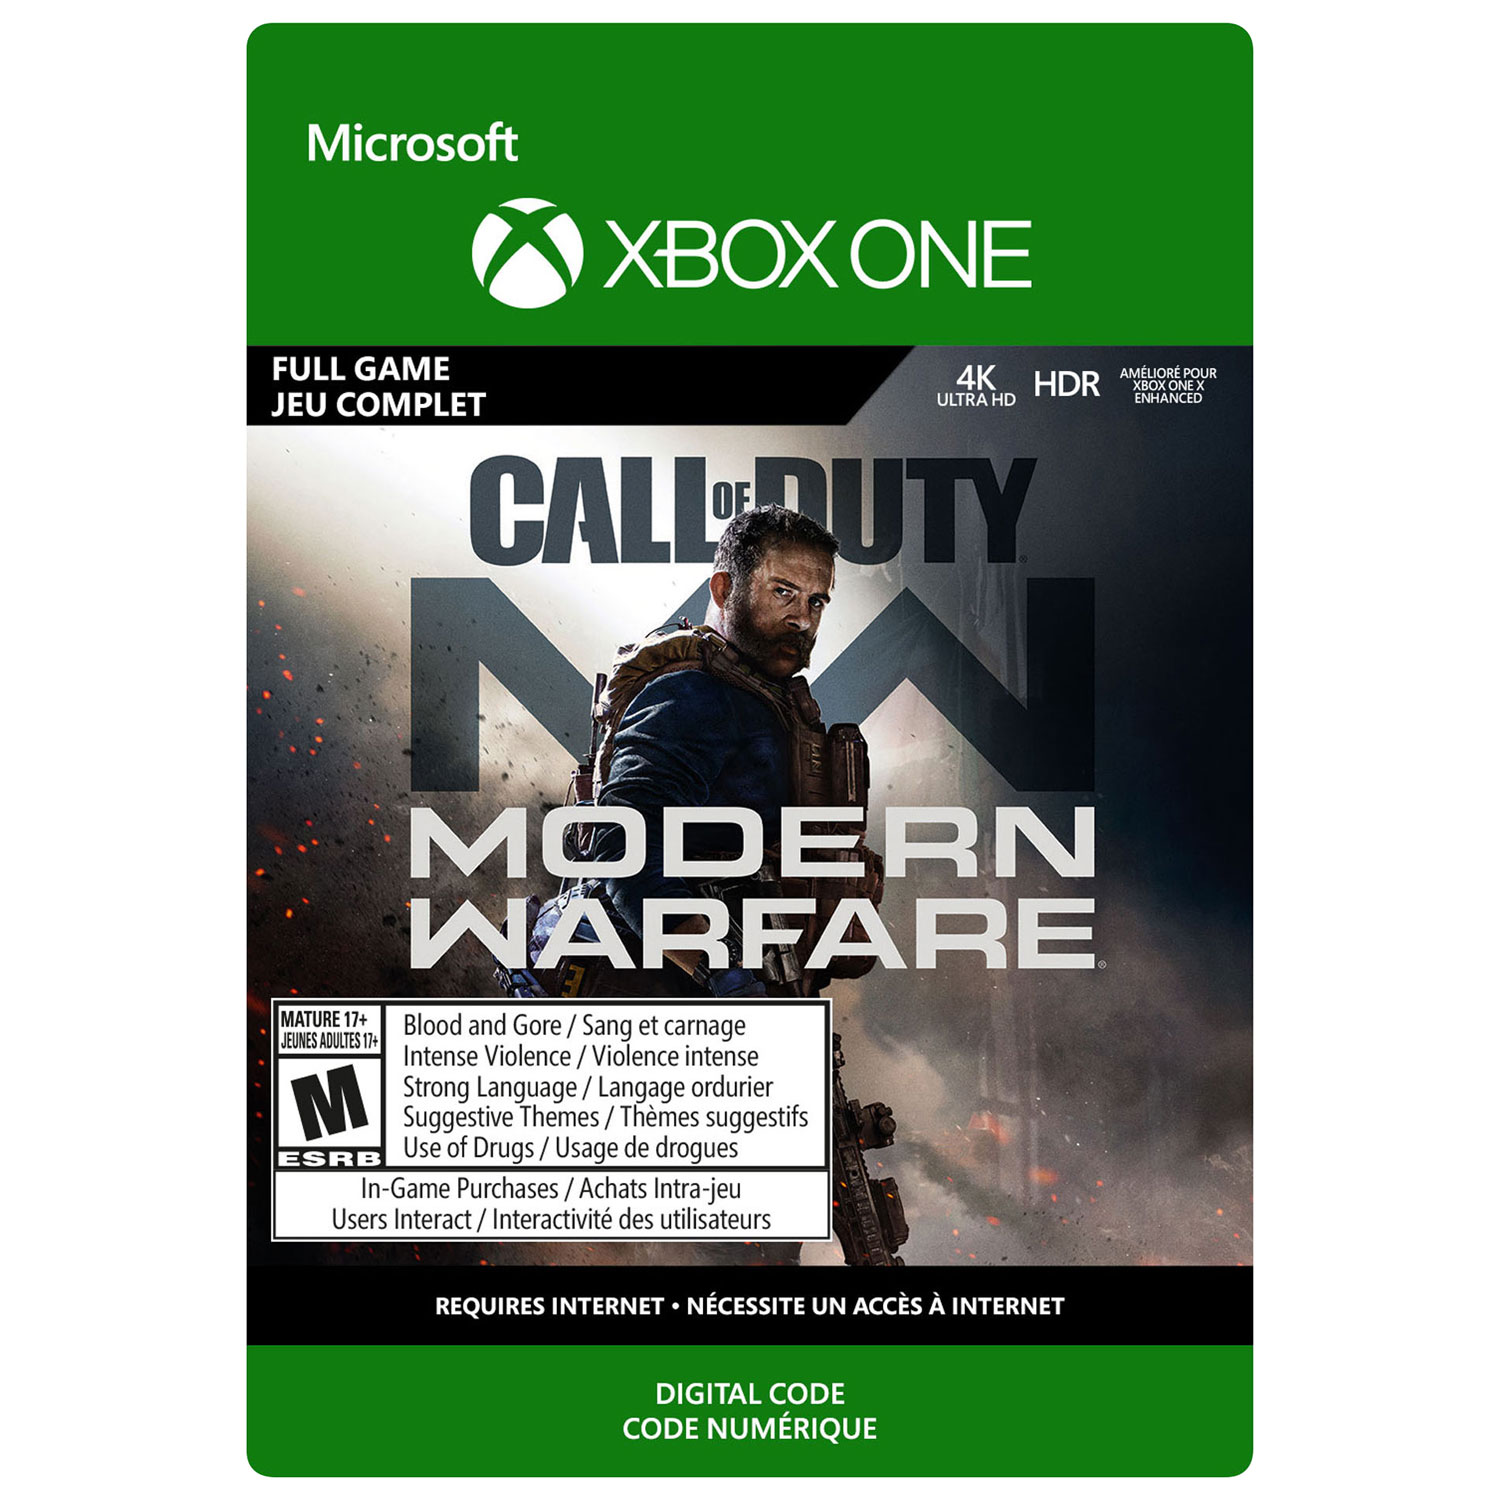 Call of Duty: Modern Warfare (Xbox One) - Digital Download